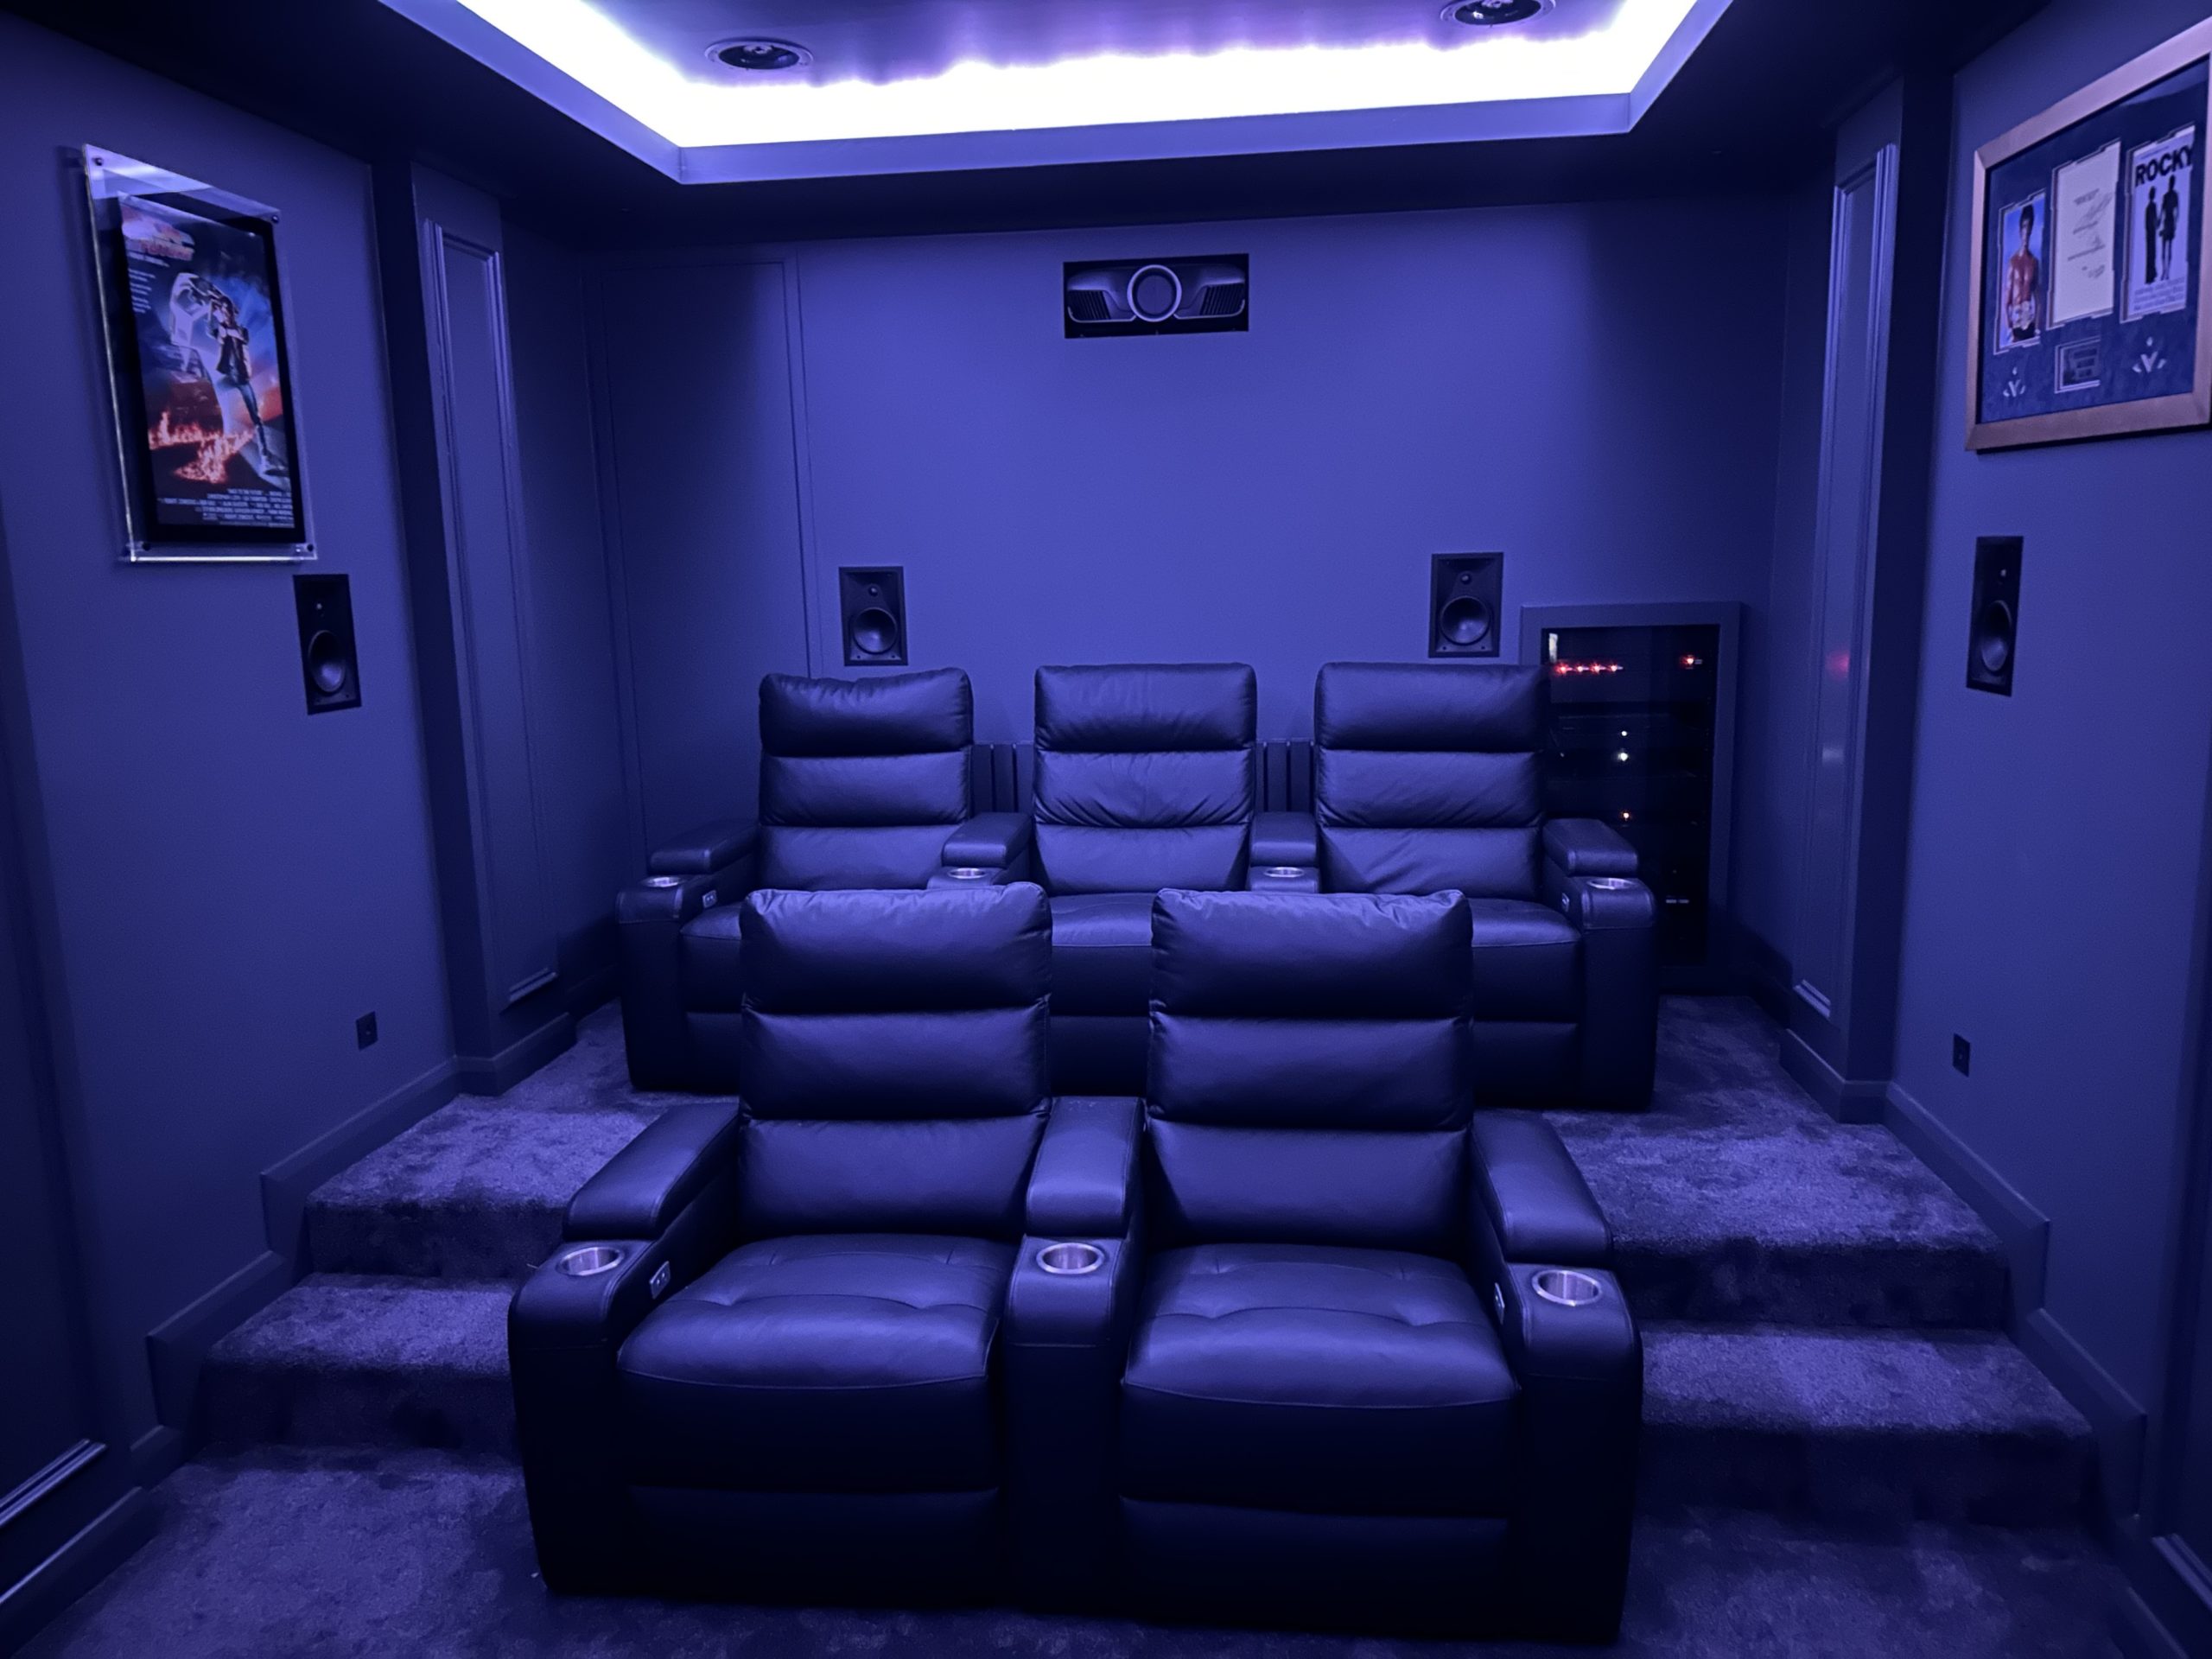 Dedicated home cinema lighting